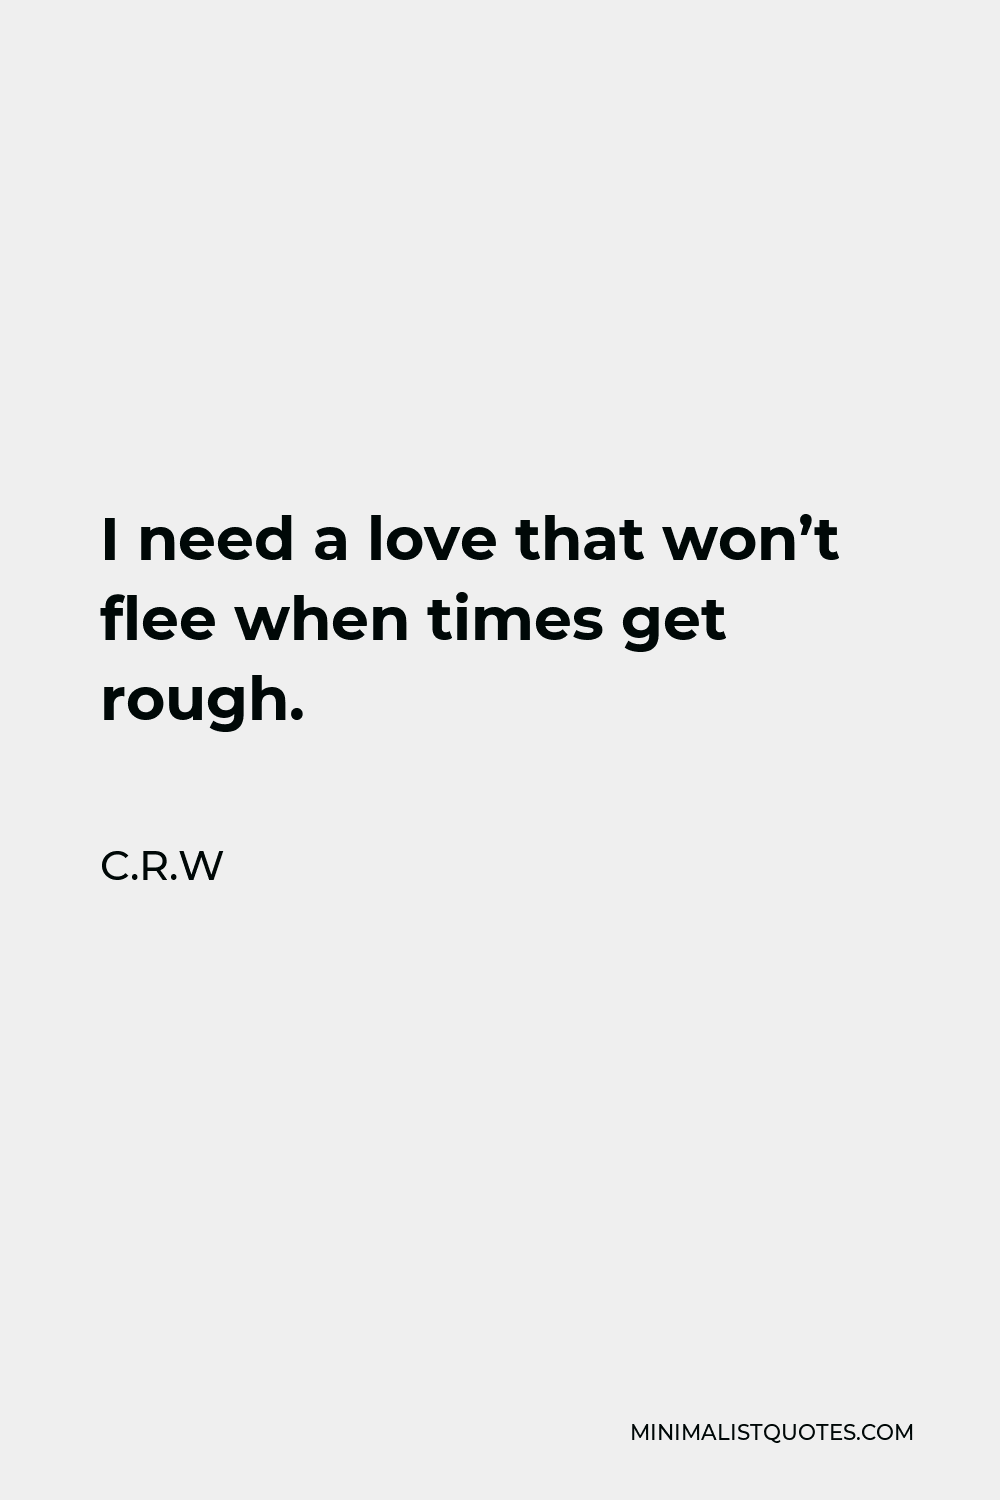 C.R.W Quote - I need a love that won’t flee when times get rough.